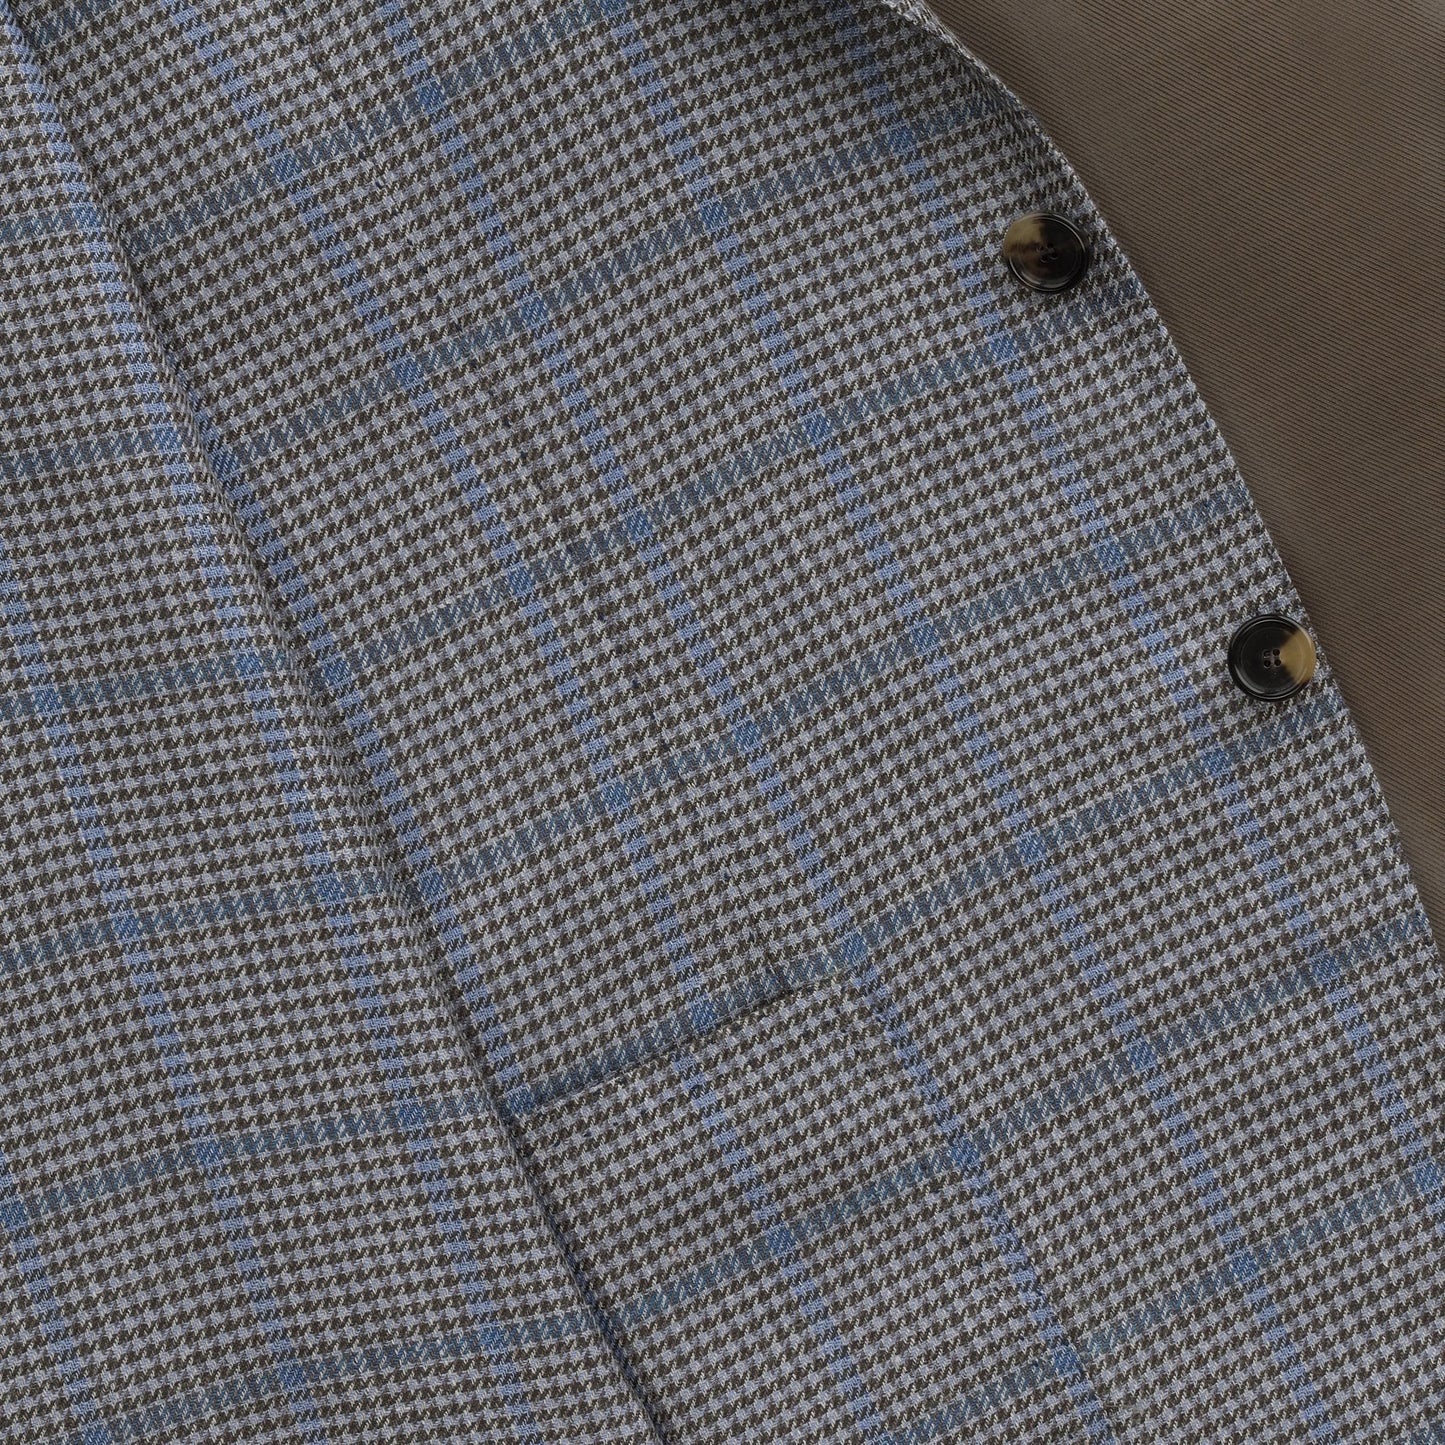 Einreihige Jacke mit Glencheck-Muster aus Seide, Kaschmir und Leinen in Hellblau